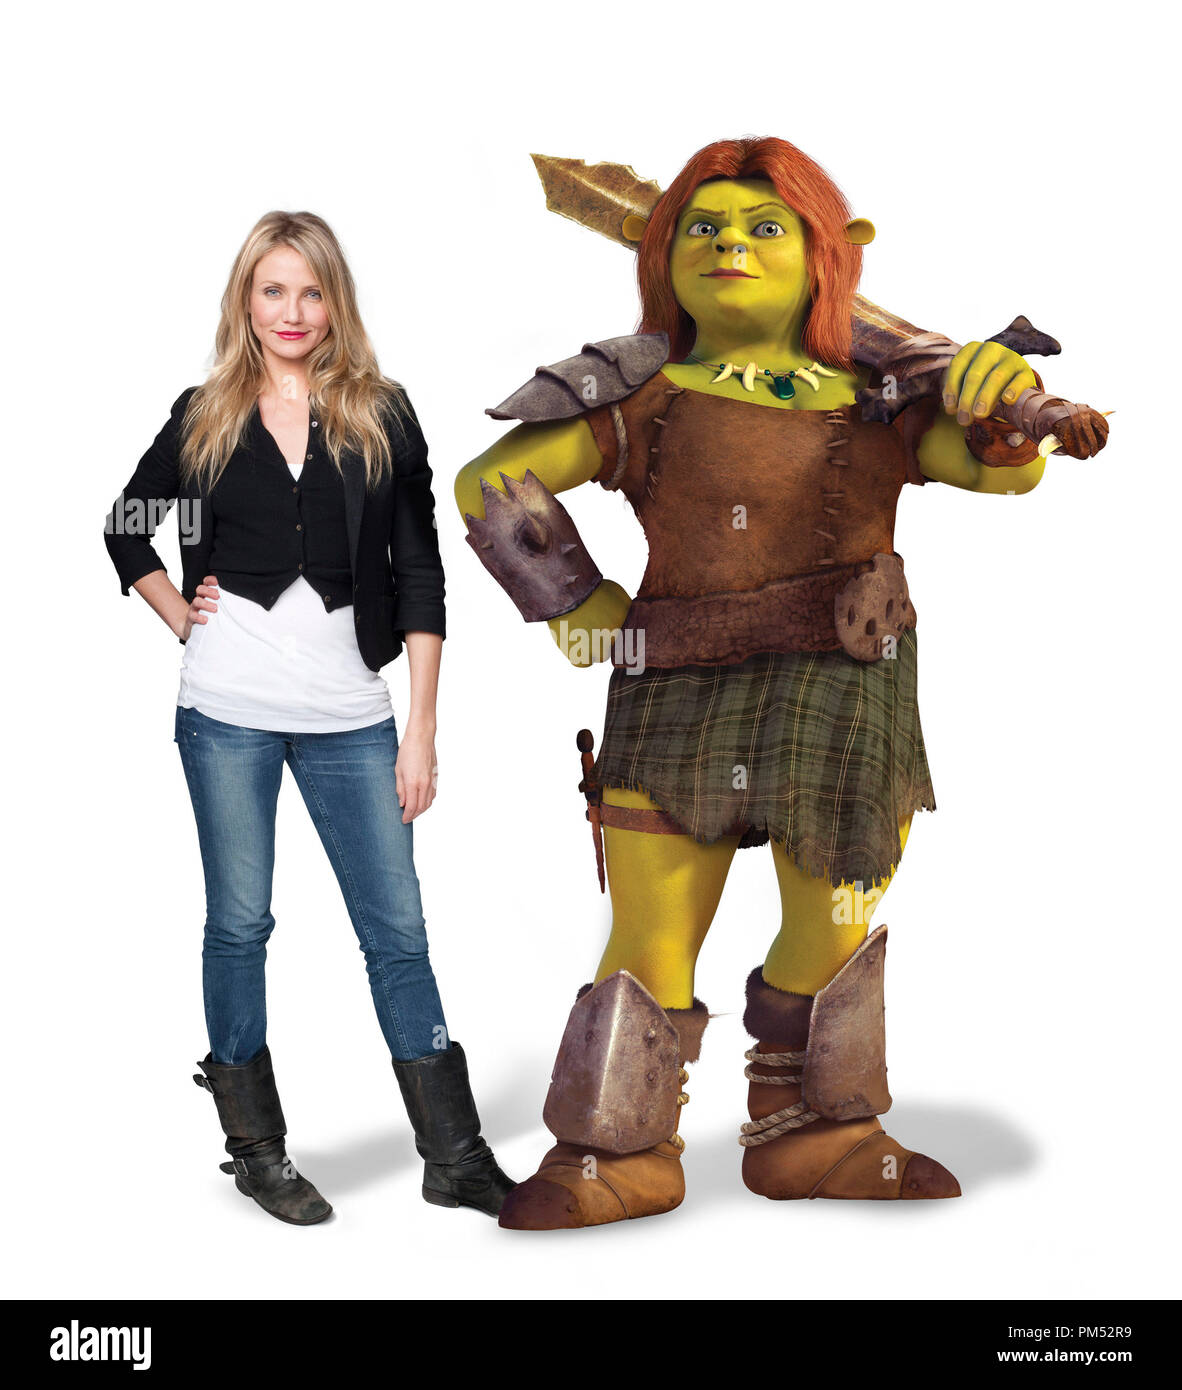 CAMERON DIAZ voces Princesa Fiona de 'Shrek Forever After' © 2010 DreamWorks Animation LLC. Todos los derechos reservados. Foto de stock